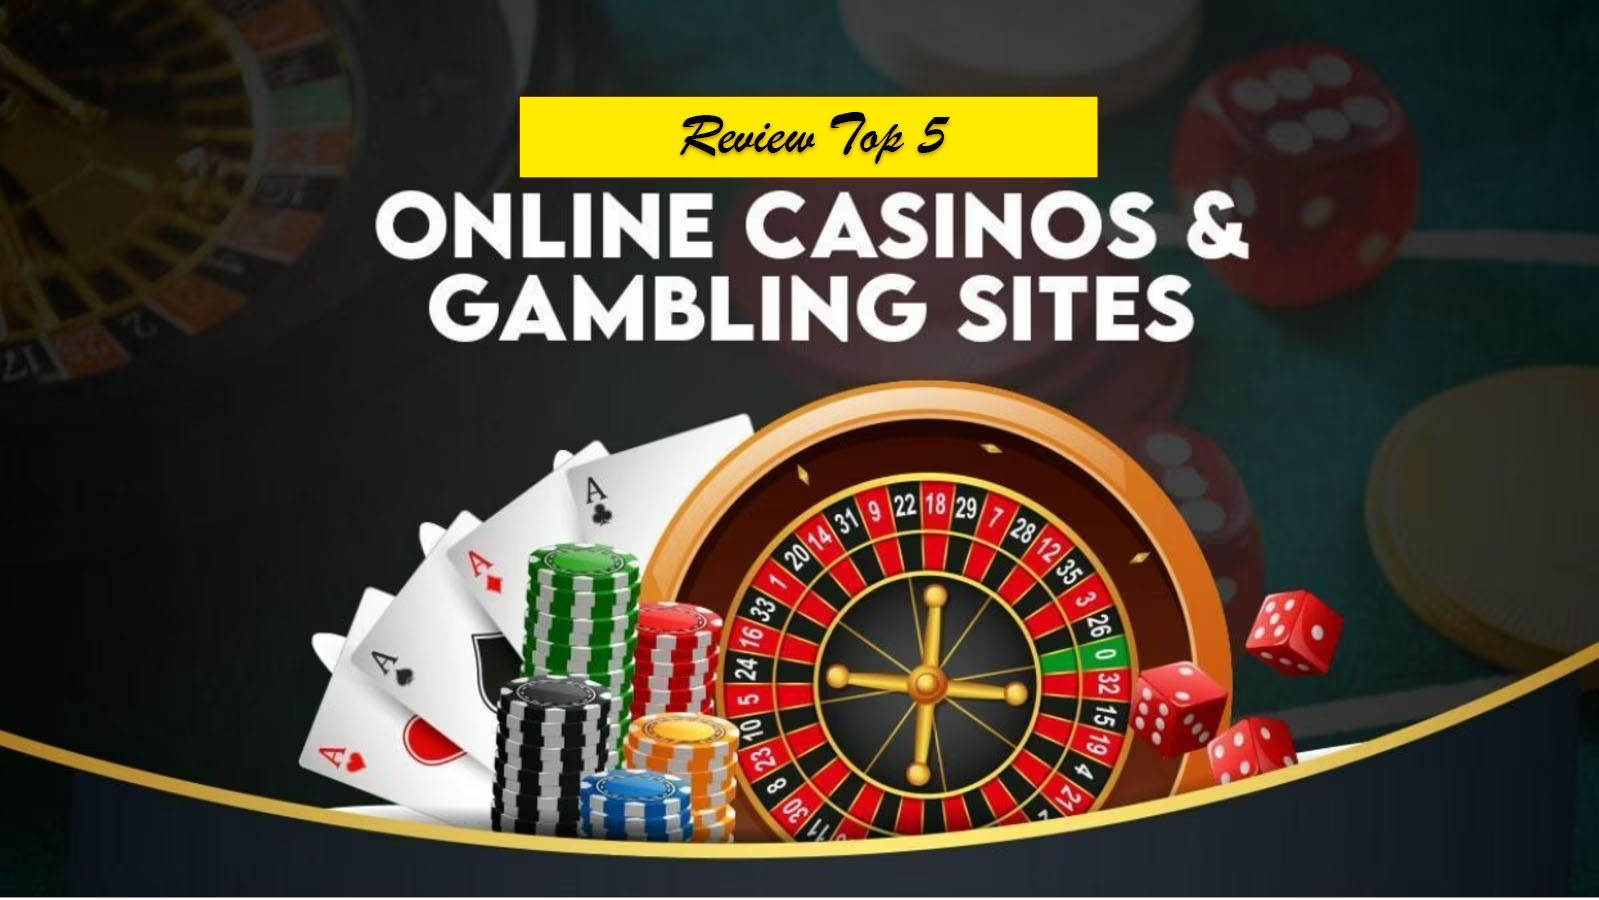 (c) Casinoonline2win.com